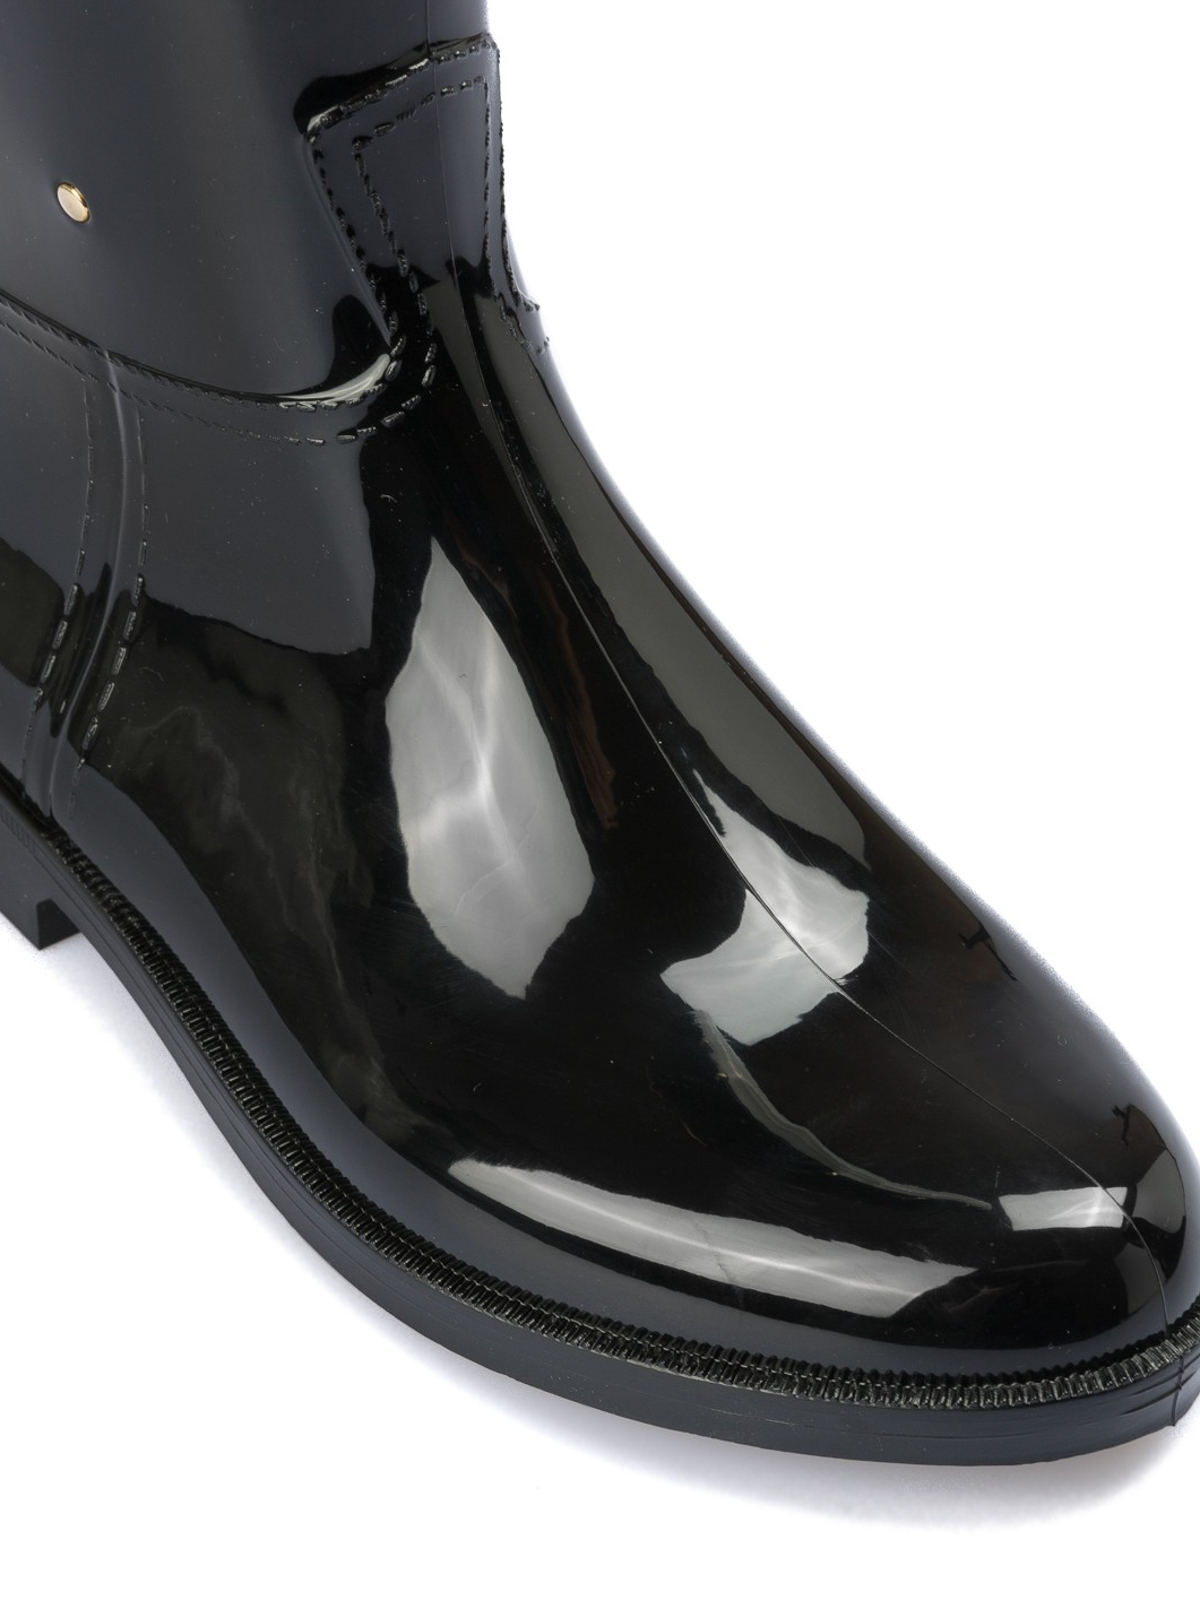 Emporio Armani - Rubber rain boots with 